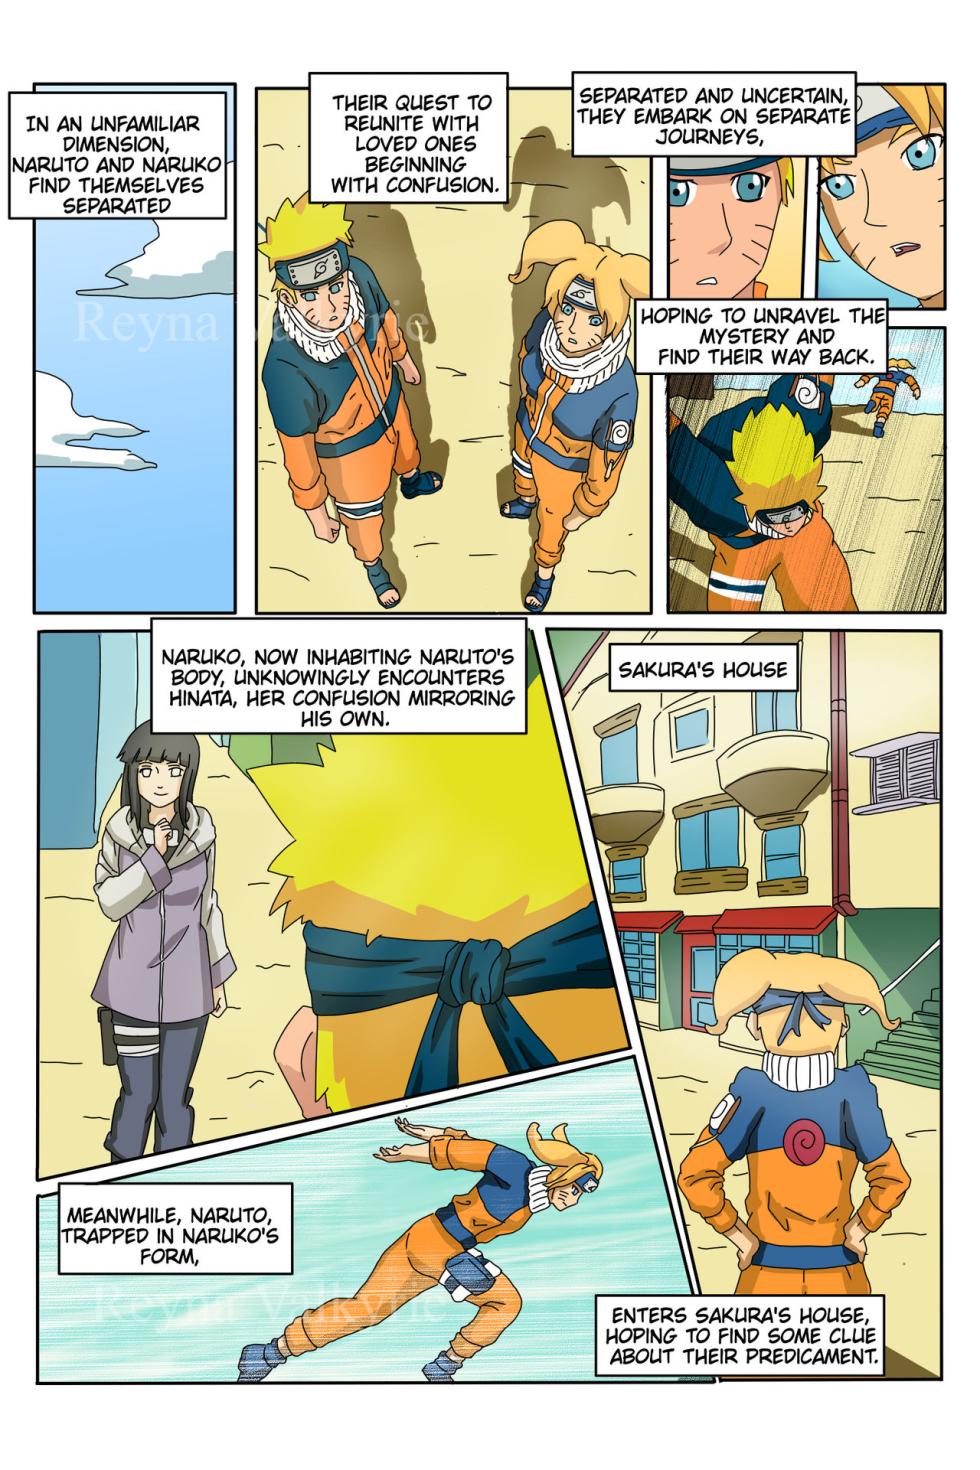 (Reynavalkyrie2)] NARU  (Naruto) - Page 1